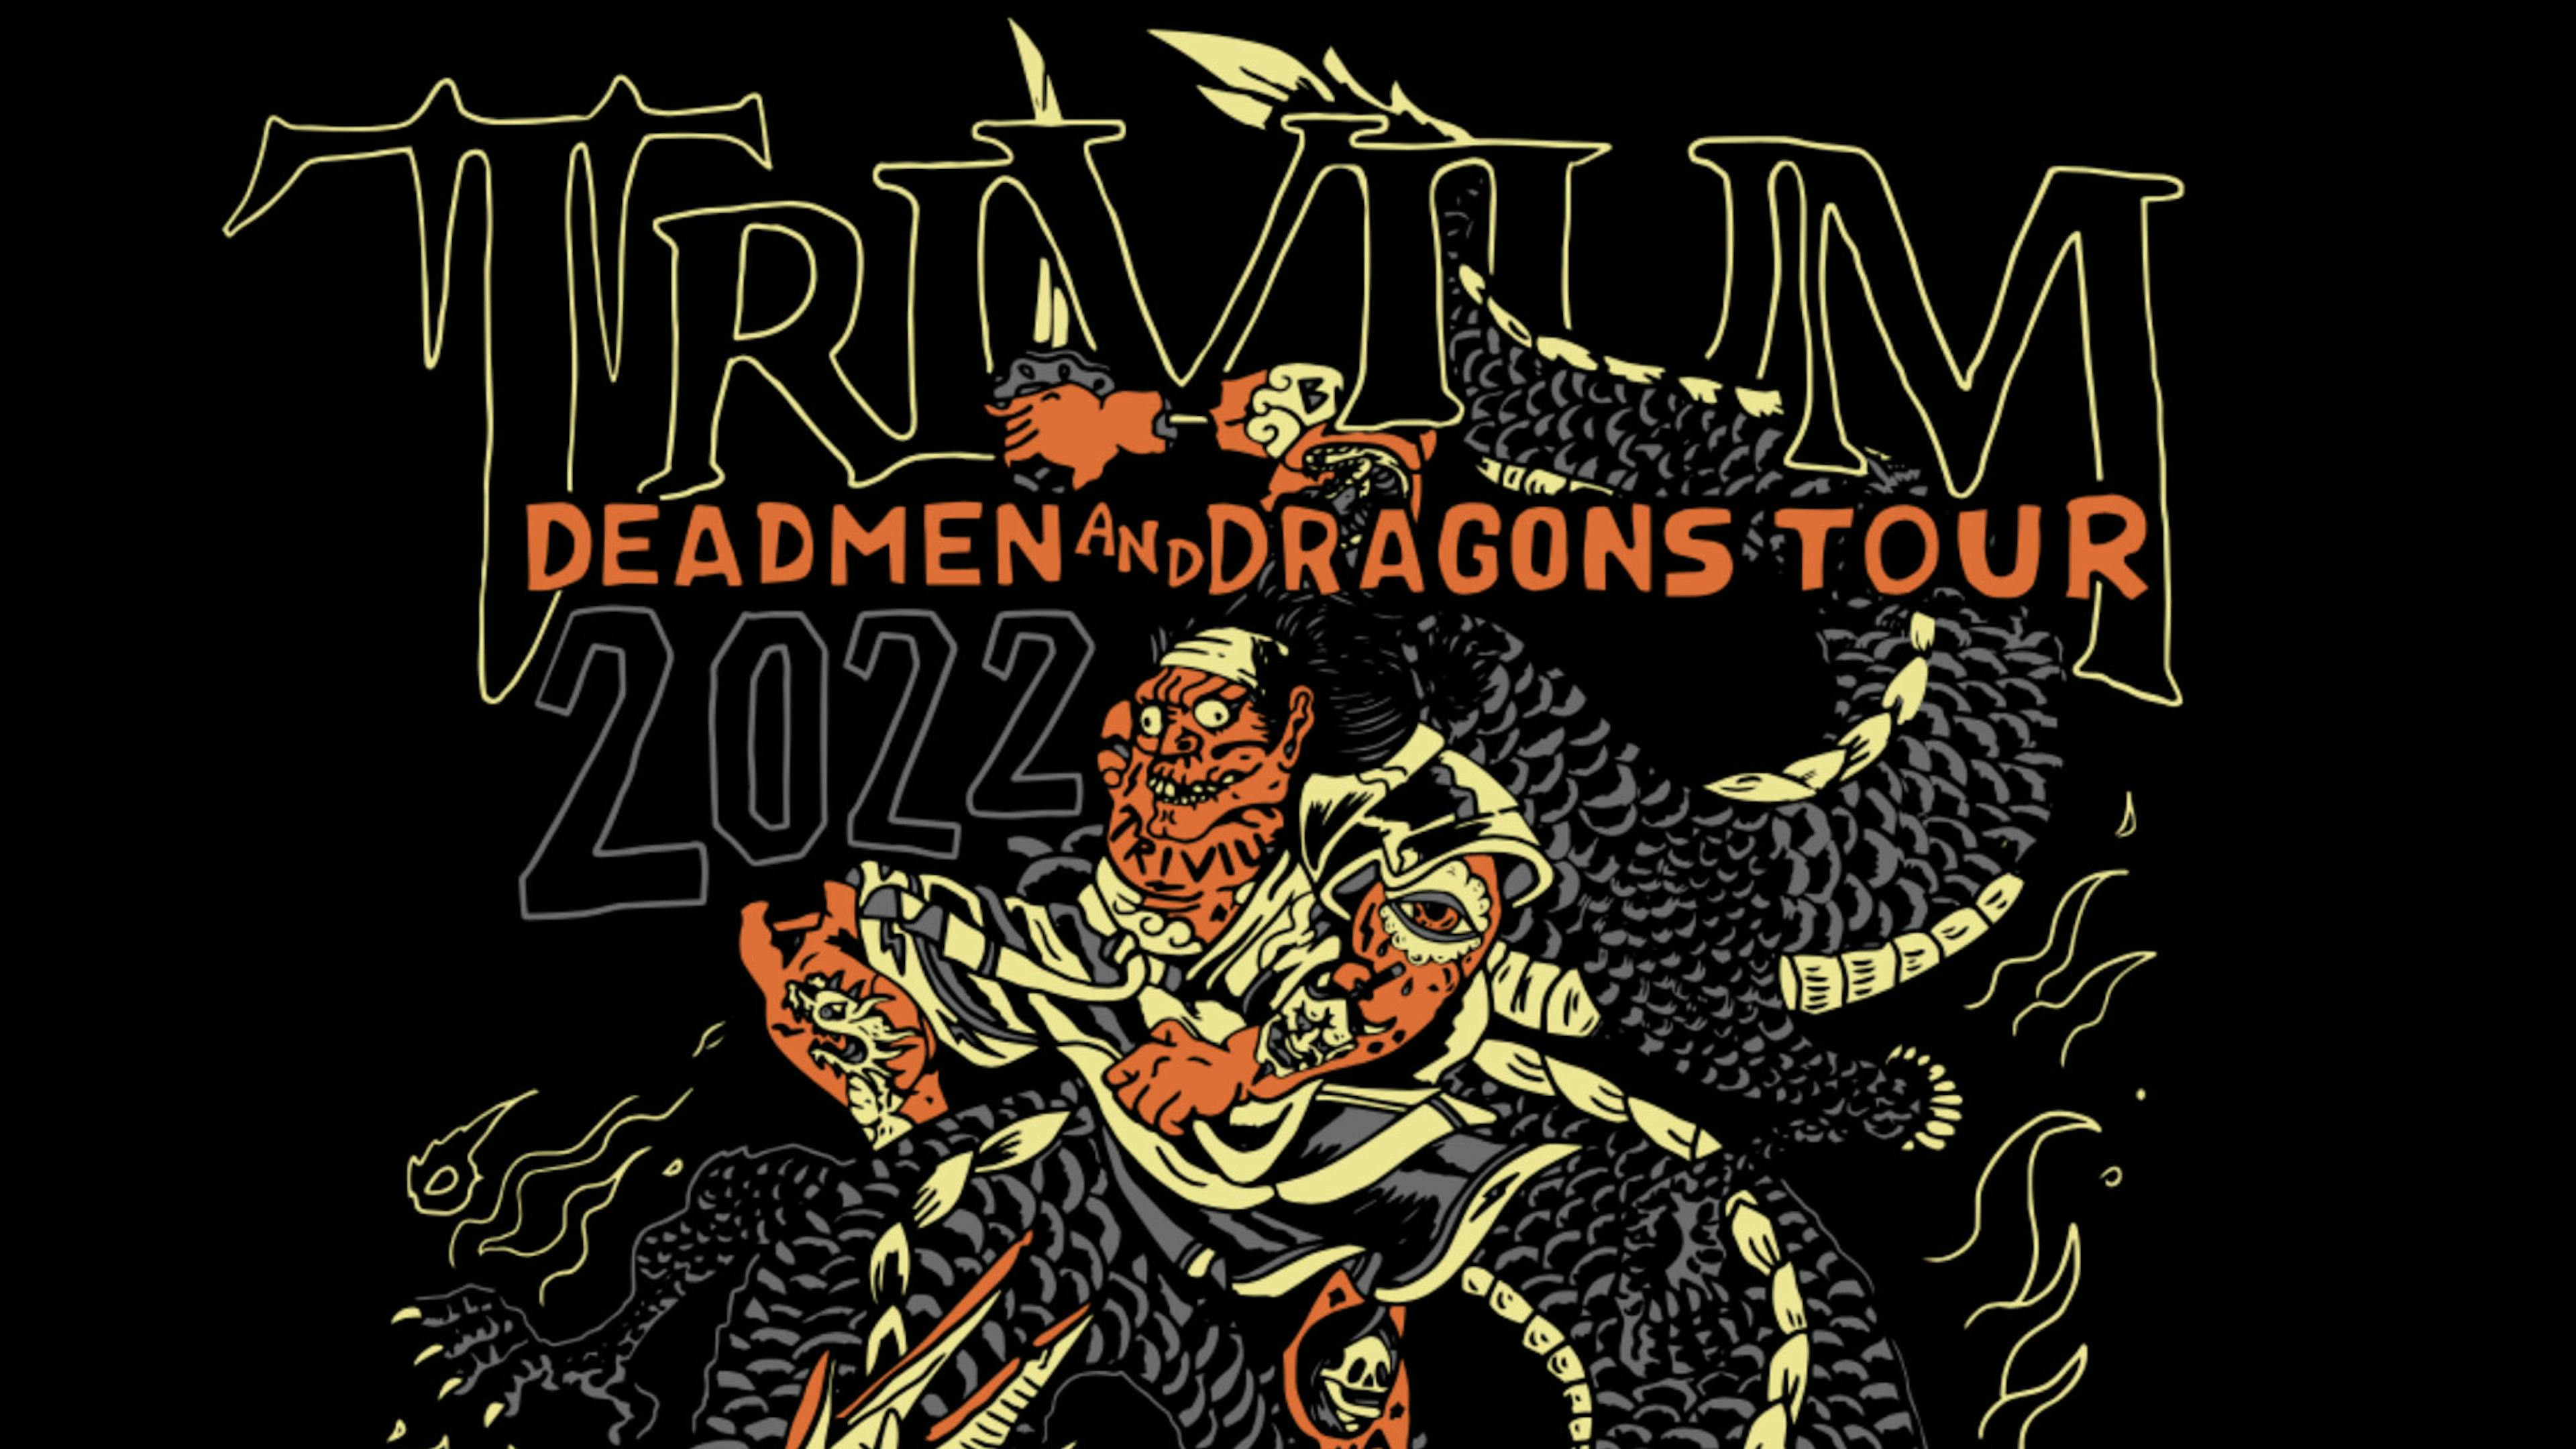 Trivium announce Deadmen And Dragons U.S. tour | Kerrang!